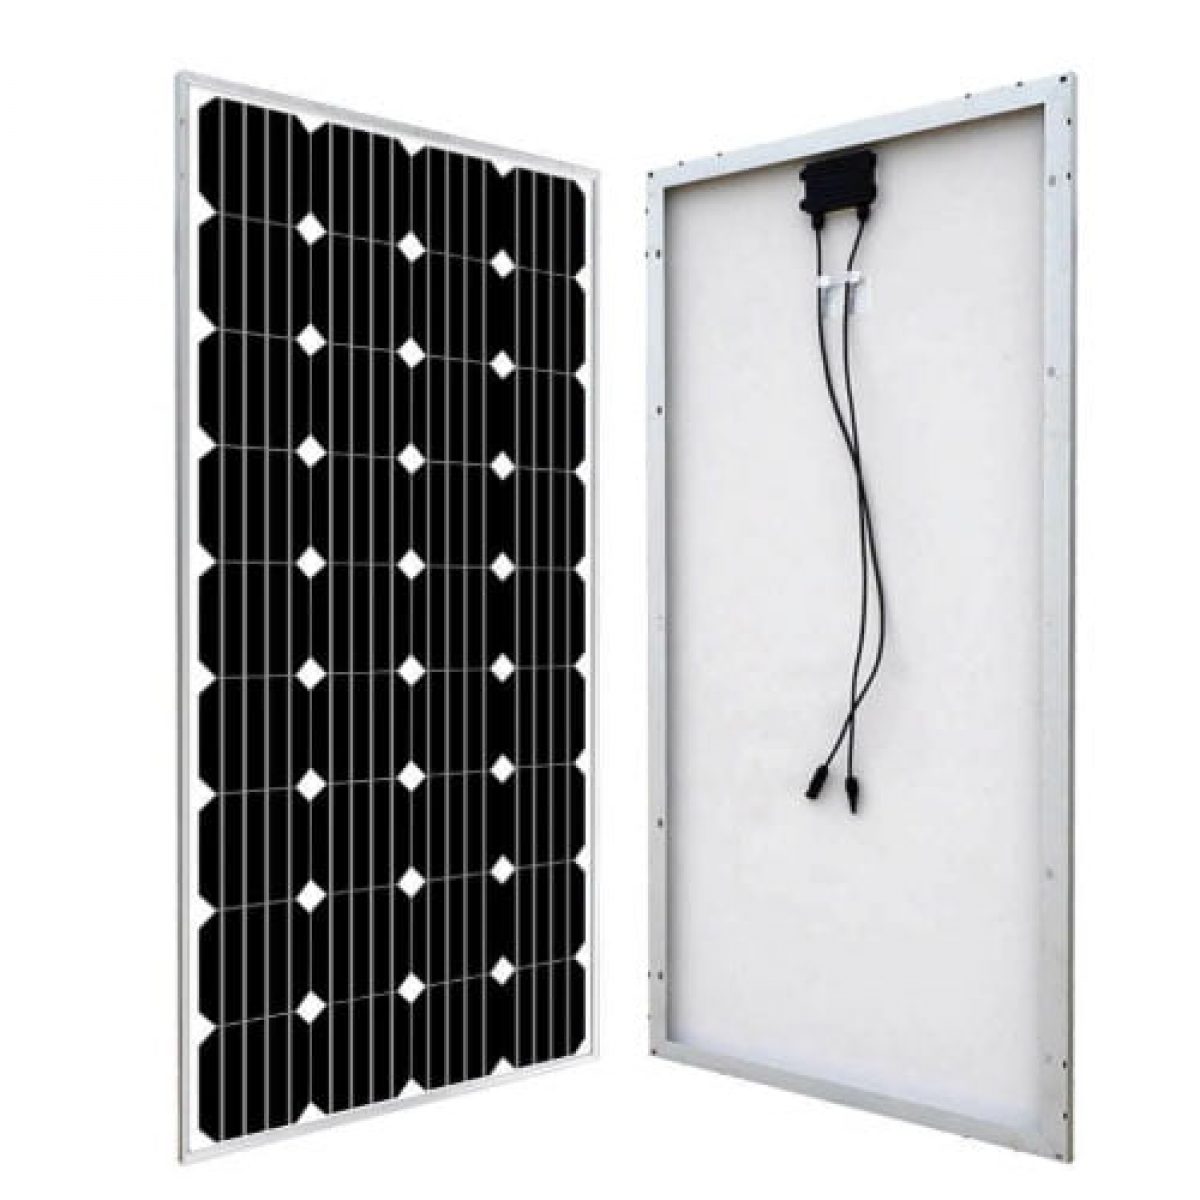 Solar panel 100W 12V monocrystalline NX